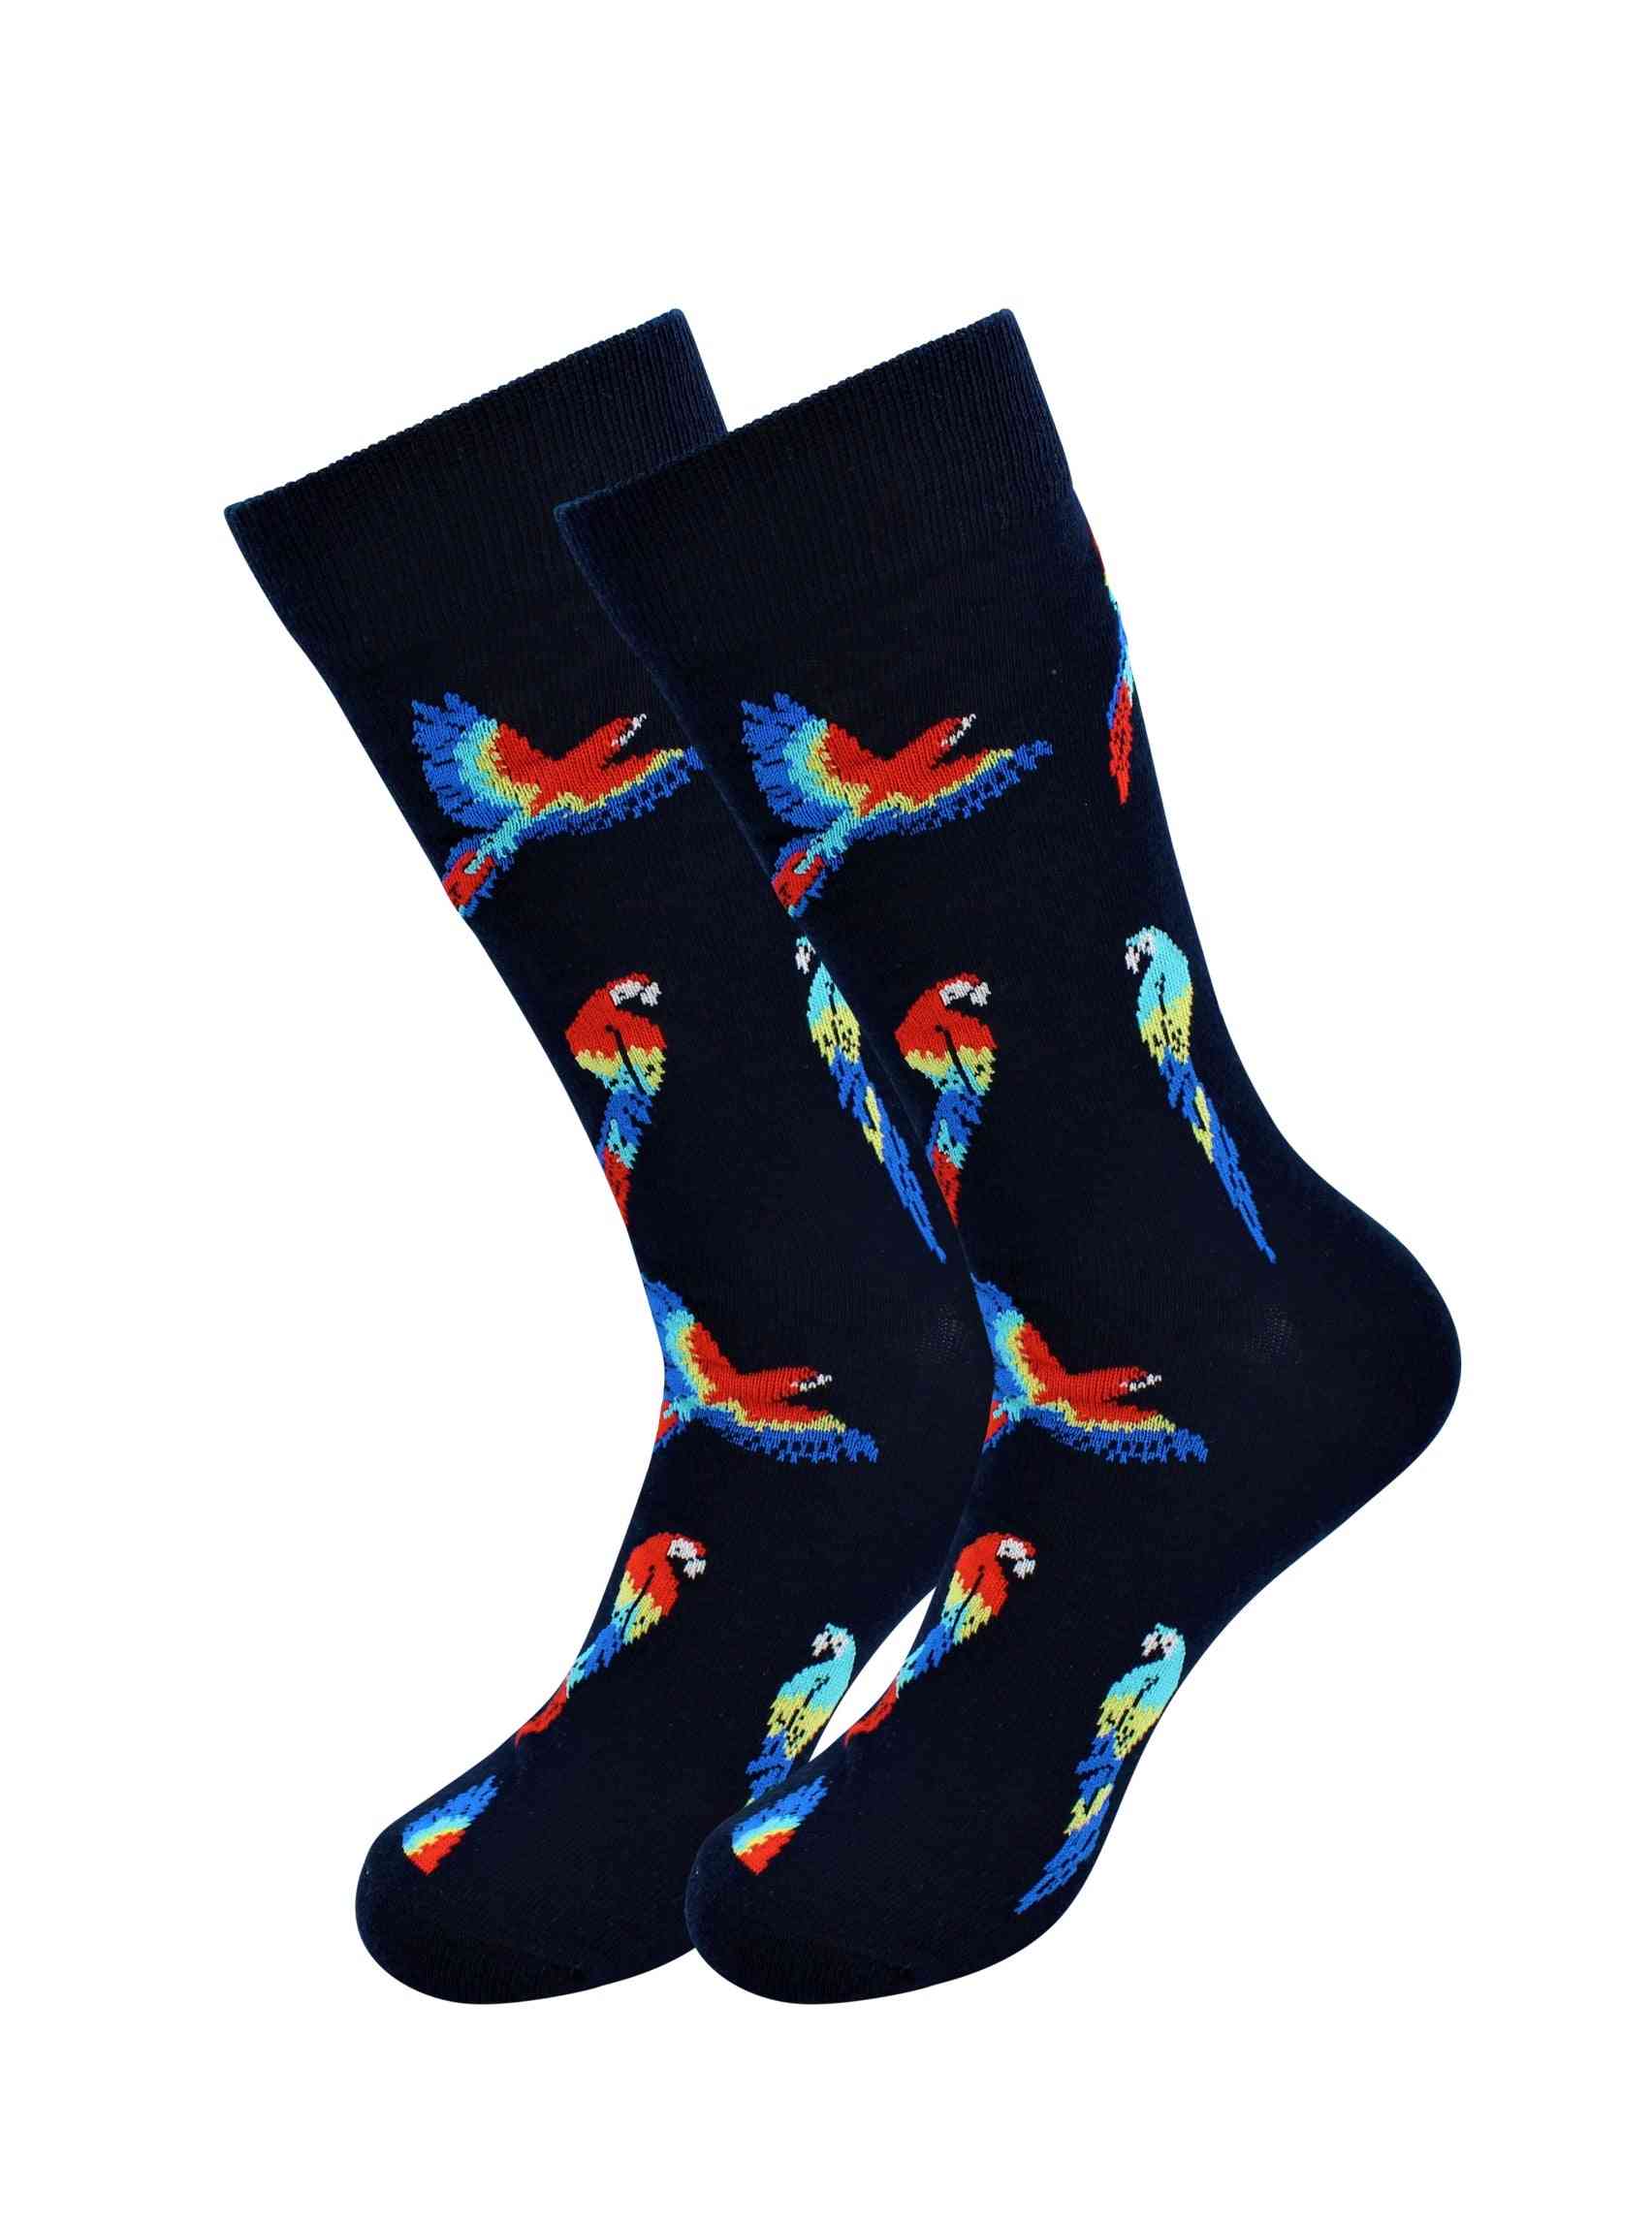 Zieke sokken papegaaien ontworpen's